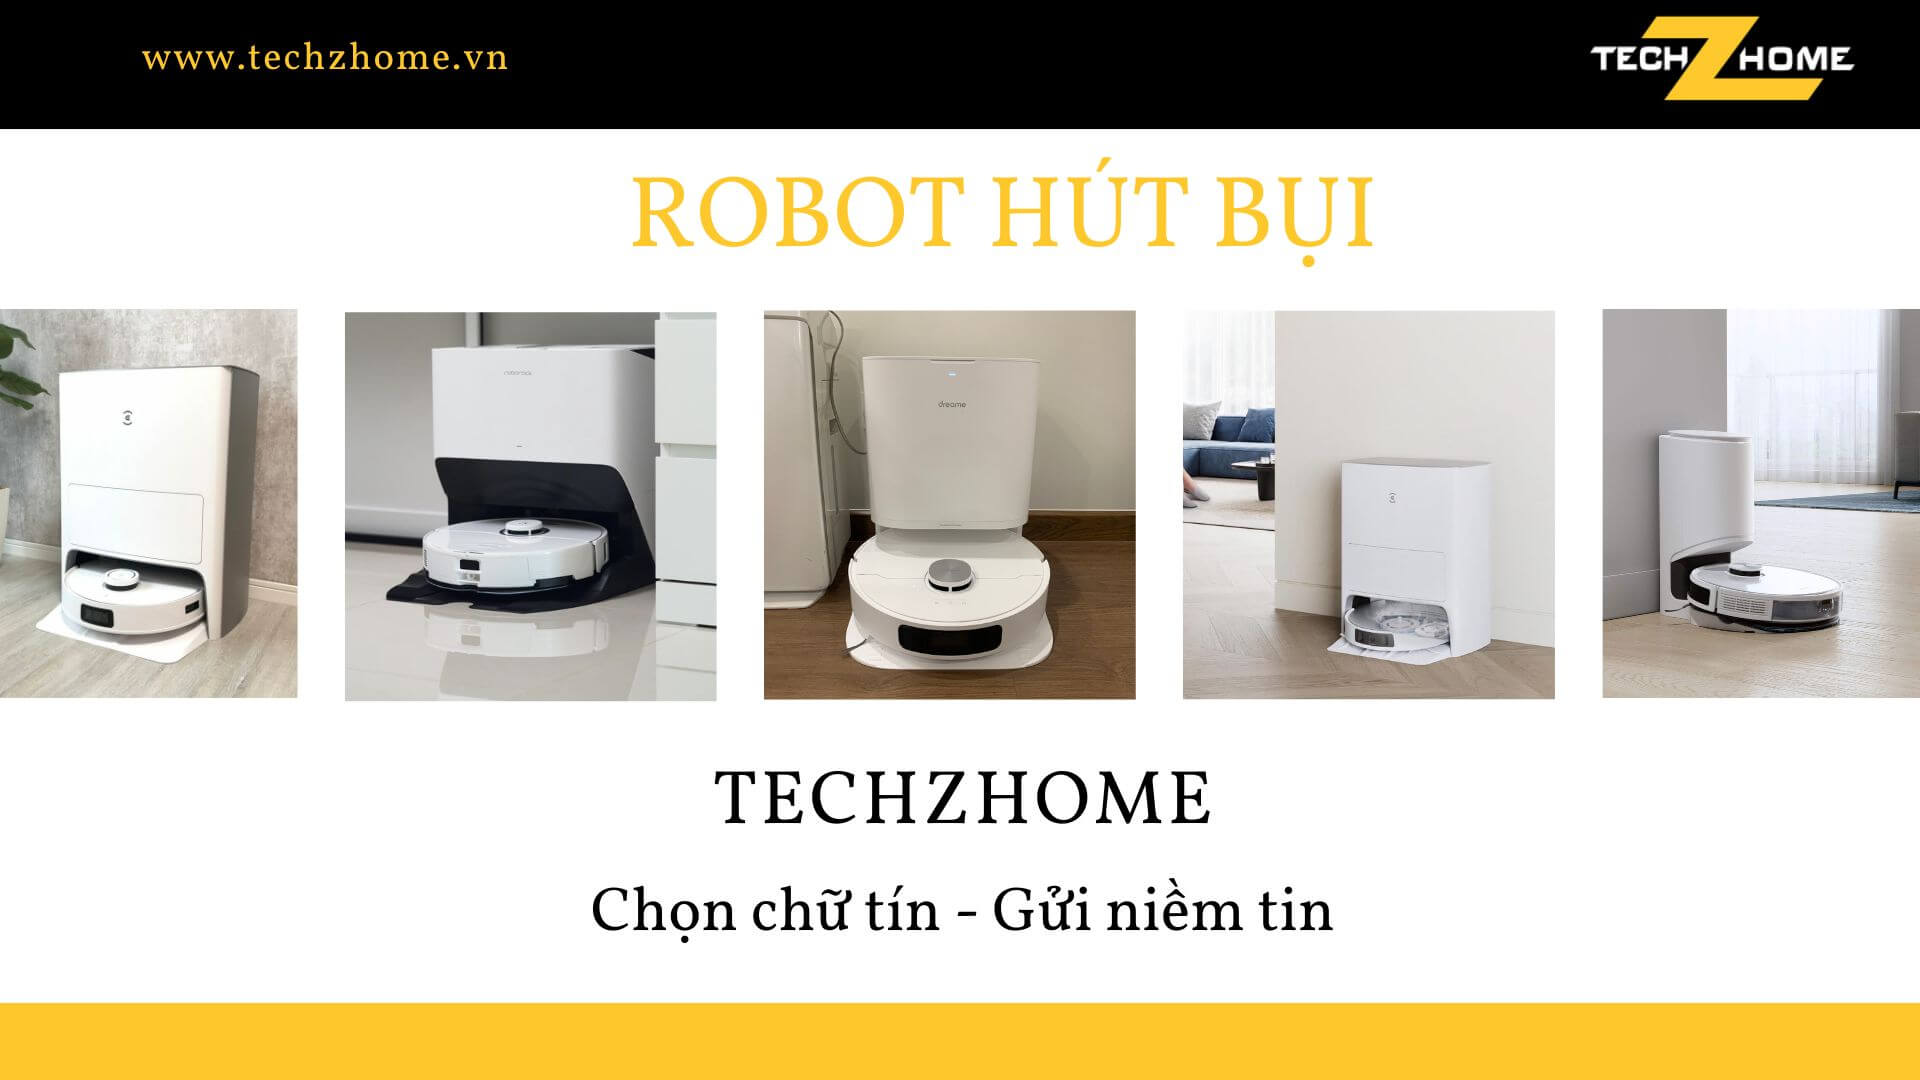 Techzhome - Lựa chọn số một cho robot hút bụi thông minh